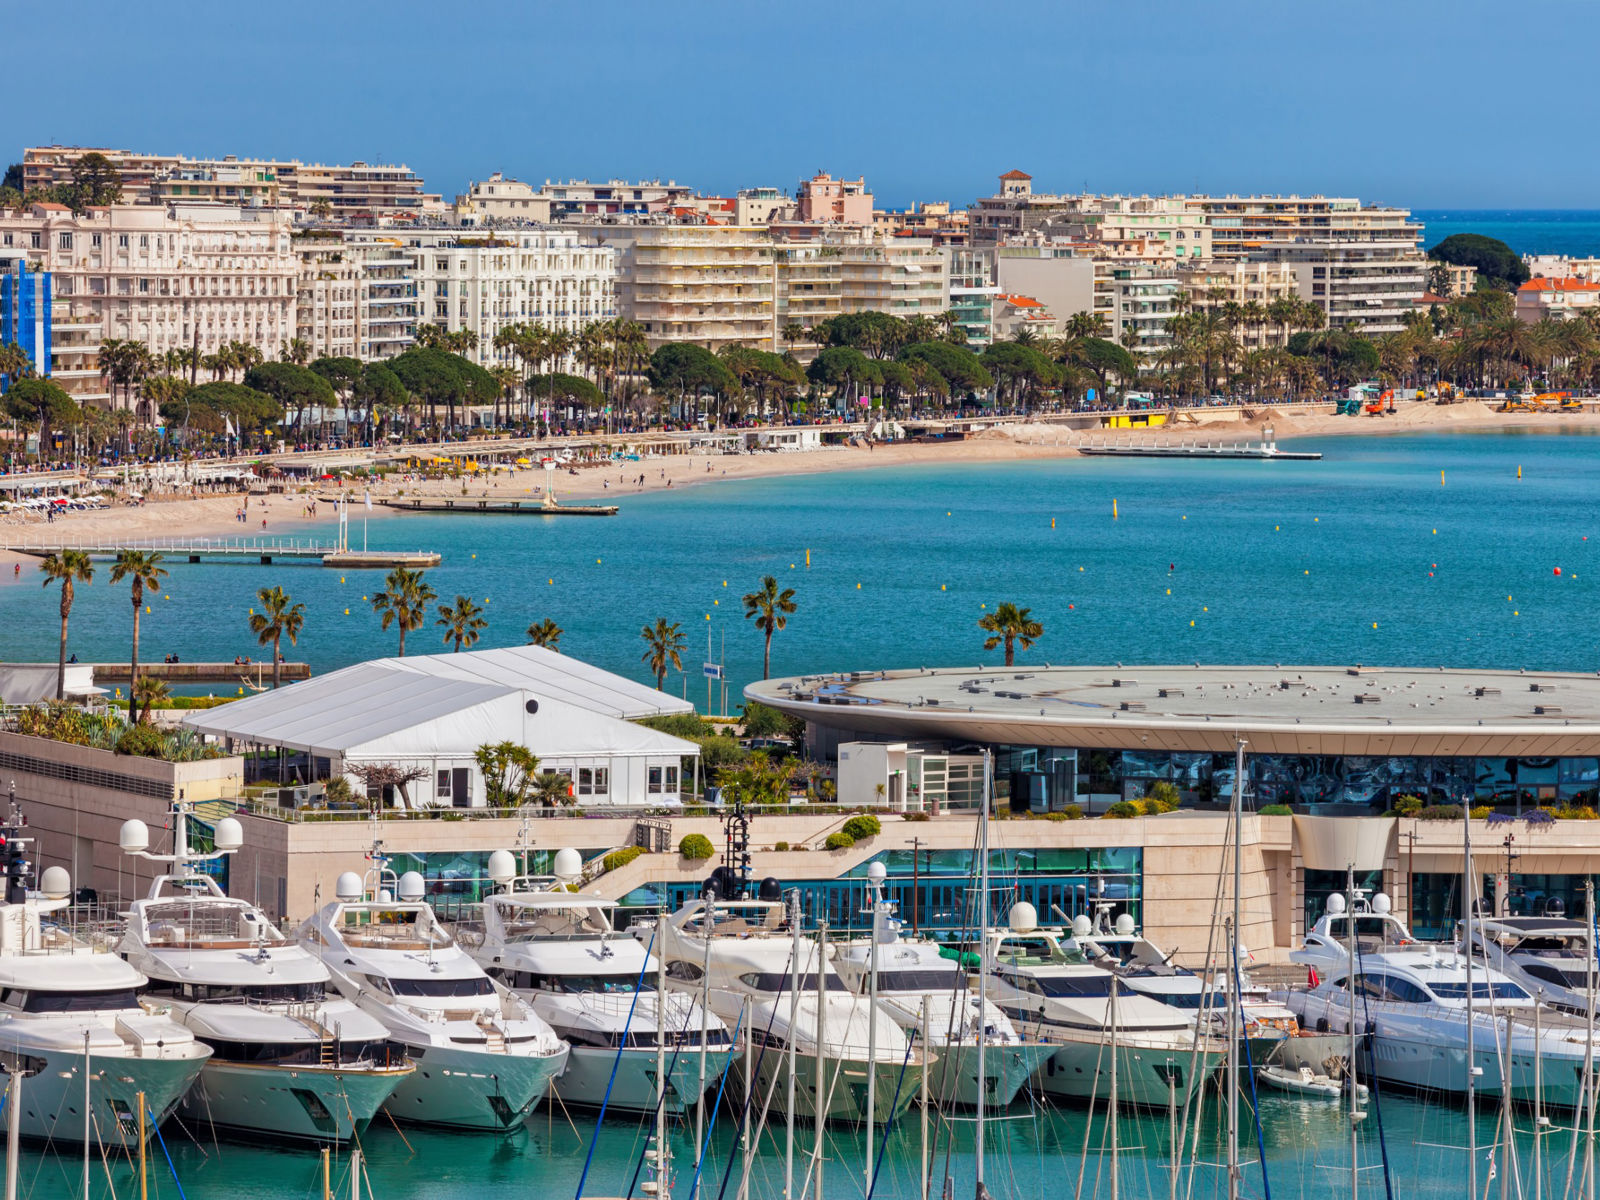 Resa till Cannes - Vy över en livlig marina med lyxbåtar förtöjda framför en sandstrand och en stadssilhuett med palmer och hotell i bakgrunden under en klarblå himmel.